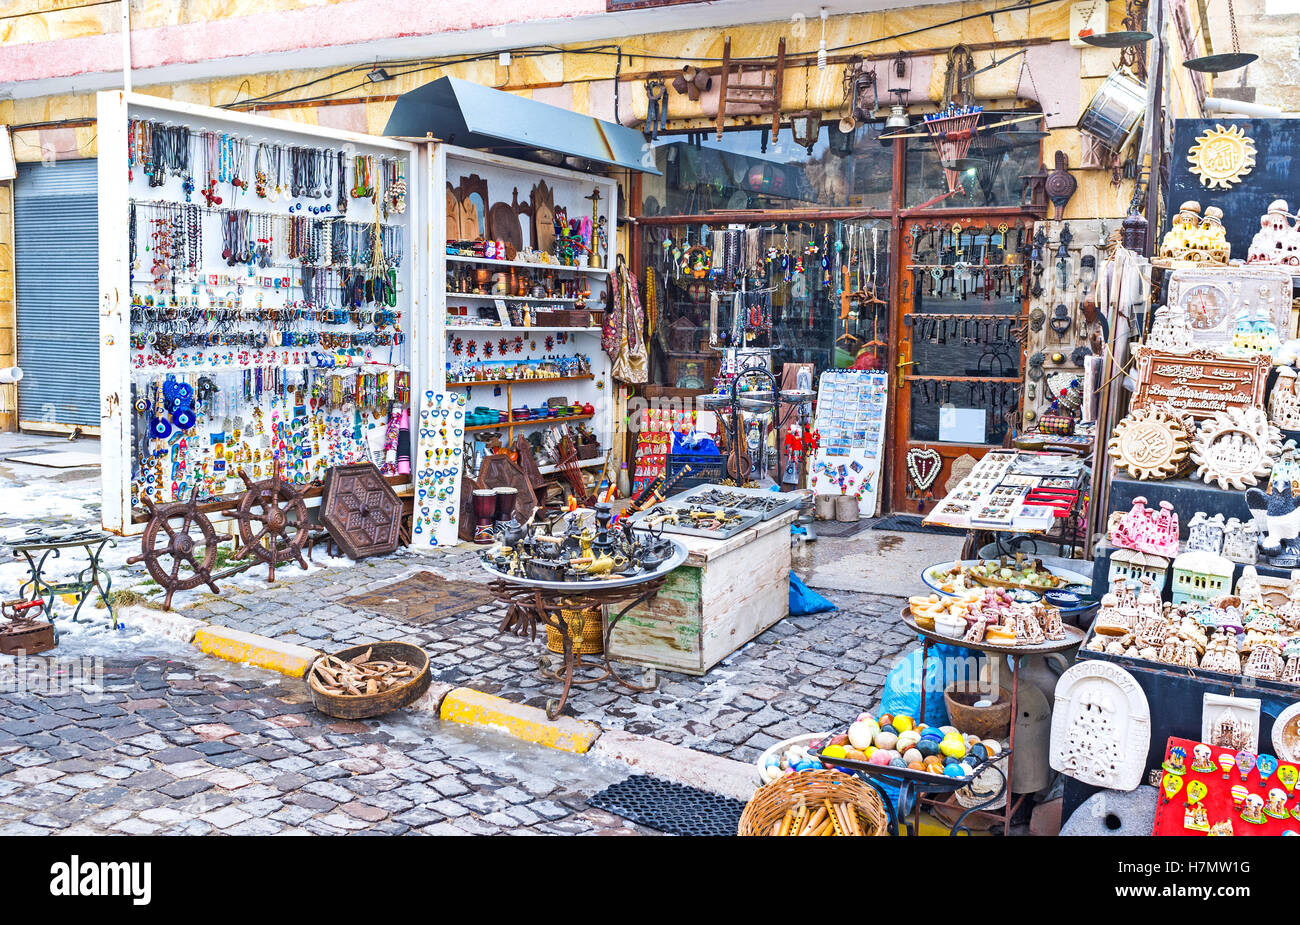 La large gamme de souvenirs intéressants dans le grand magasin à Uchisar, Cappadoce, Turquie. Banque D'Images